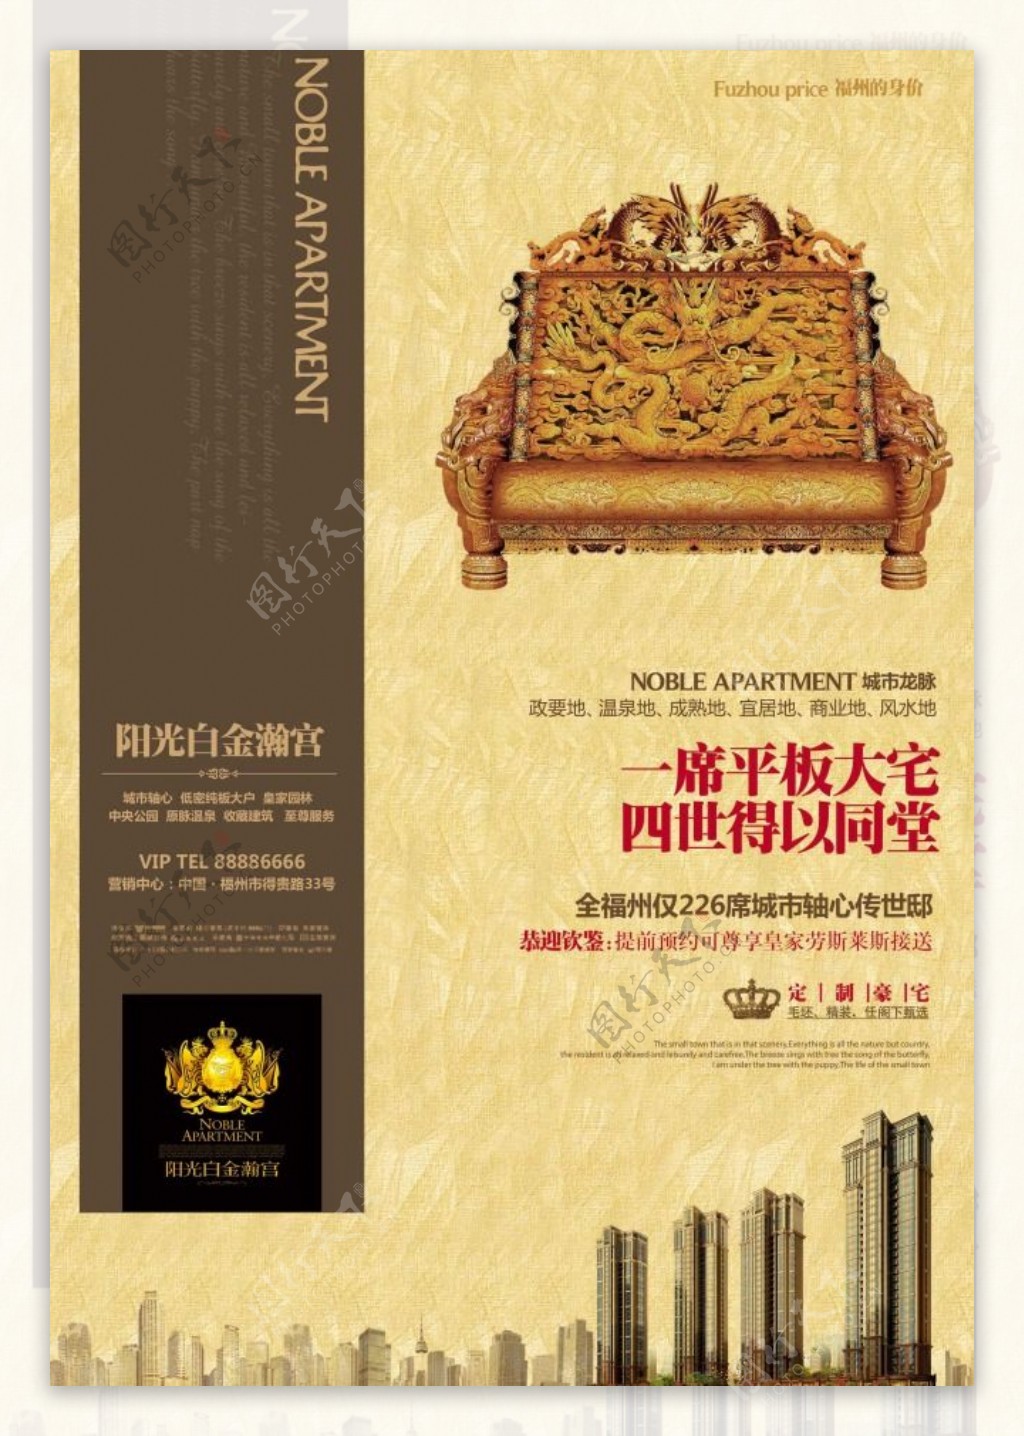 房地产广告传统龙椅中国风海报